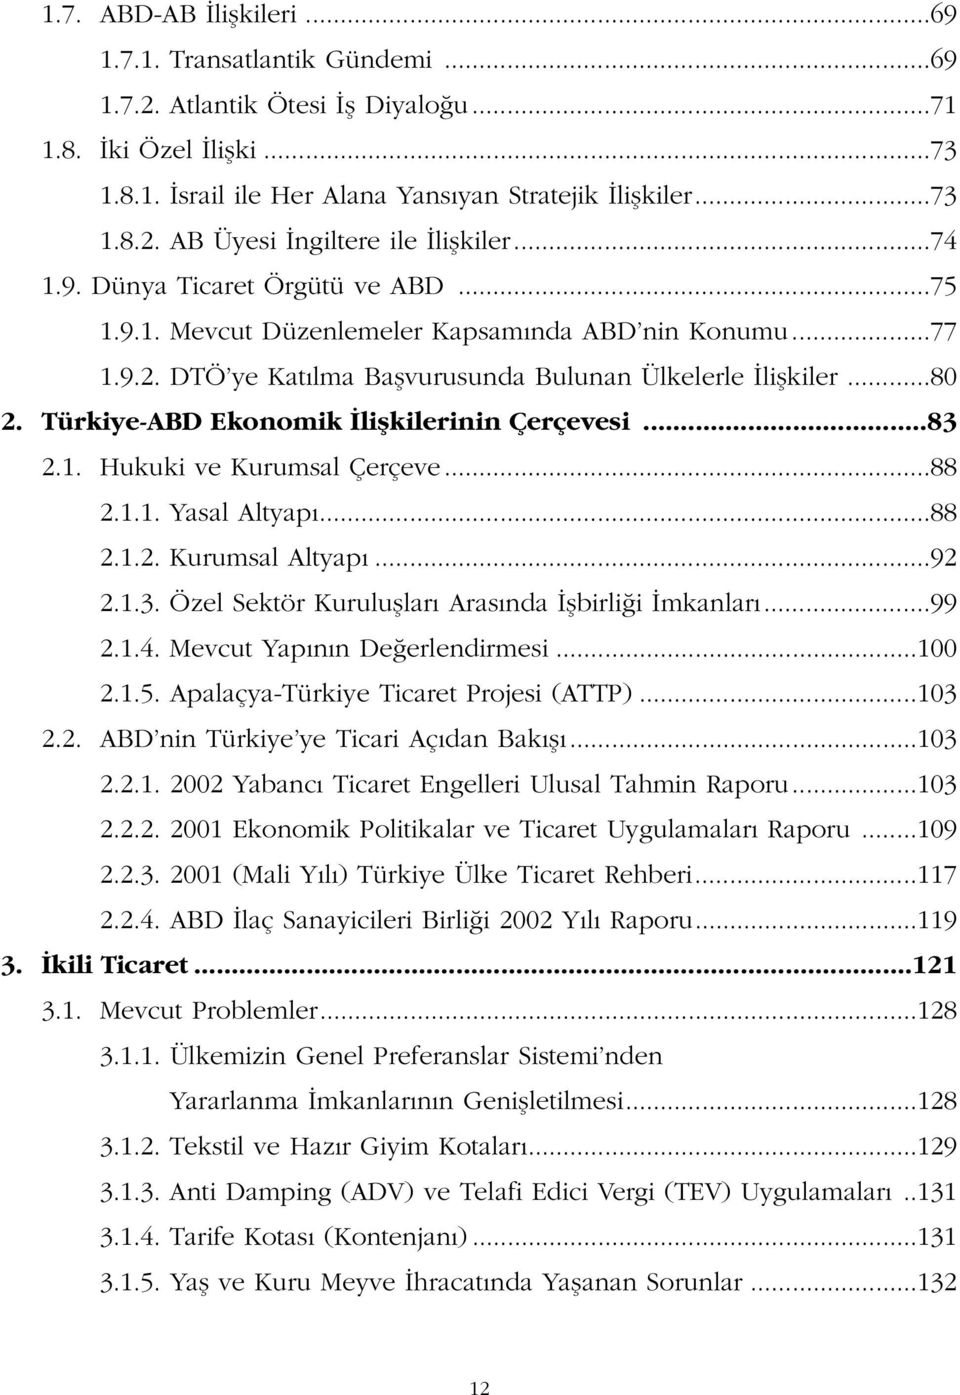 Türkiye-ABD Ekonomik liflkilerinin Çerçevesi...83 2.1. Hukuki ve Kurumsal Çerçeve...88 2.1.1. Yasal Altyap...88 2.1.2. Kurumsal Altyap...92 2.1.3. Özel Sektör Kurulufllar Aras nda flbirli i mkanlar.